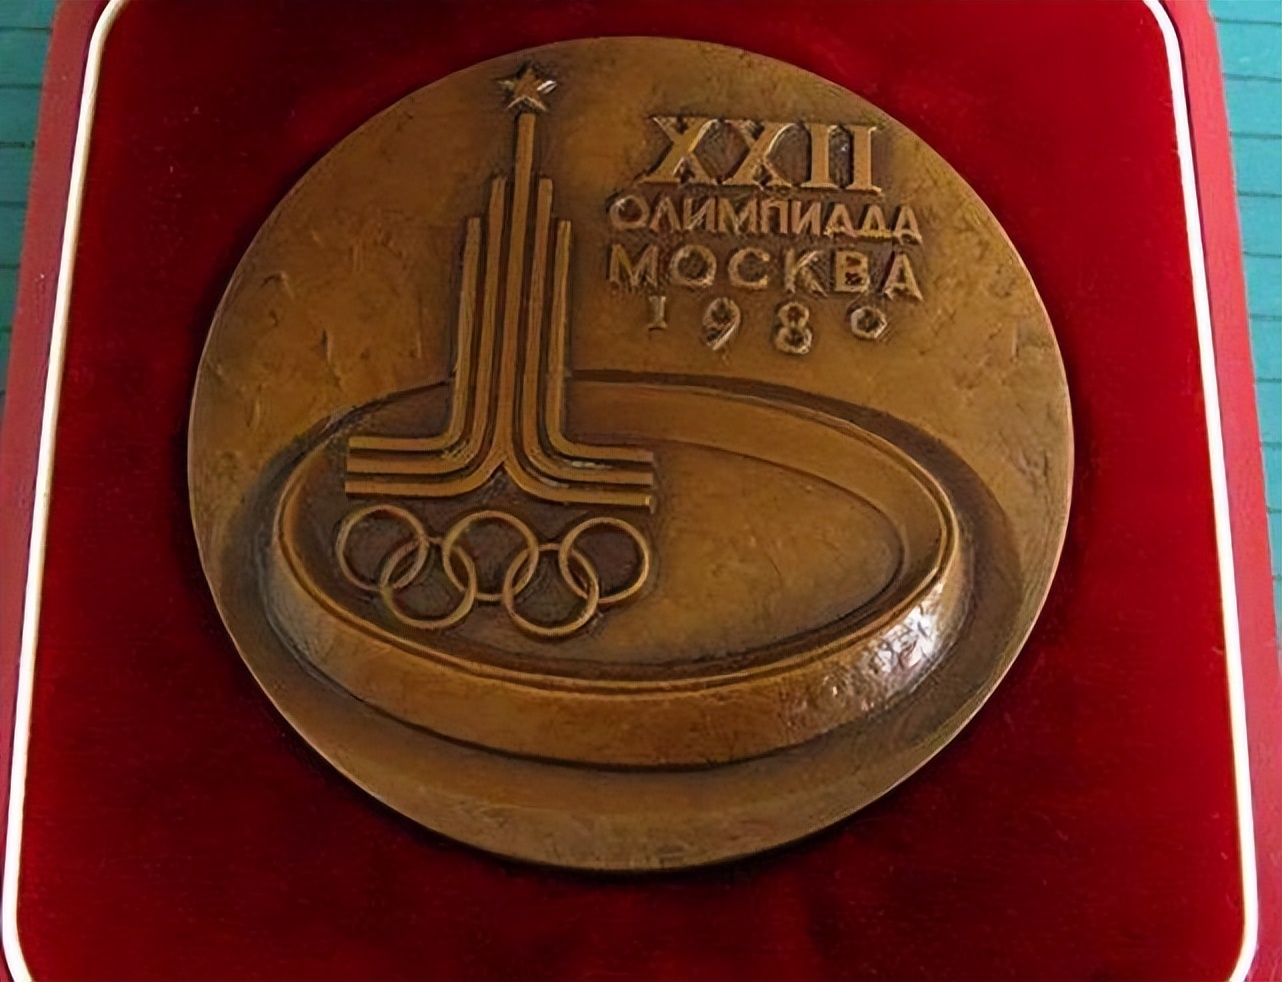 哪些国家办过多届奥运会(苏联花92亿美元筹办奥运会，却遭到67个国家联合抵制，仅81国参加)